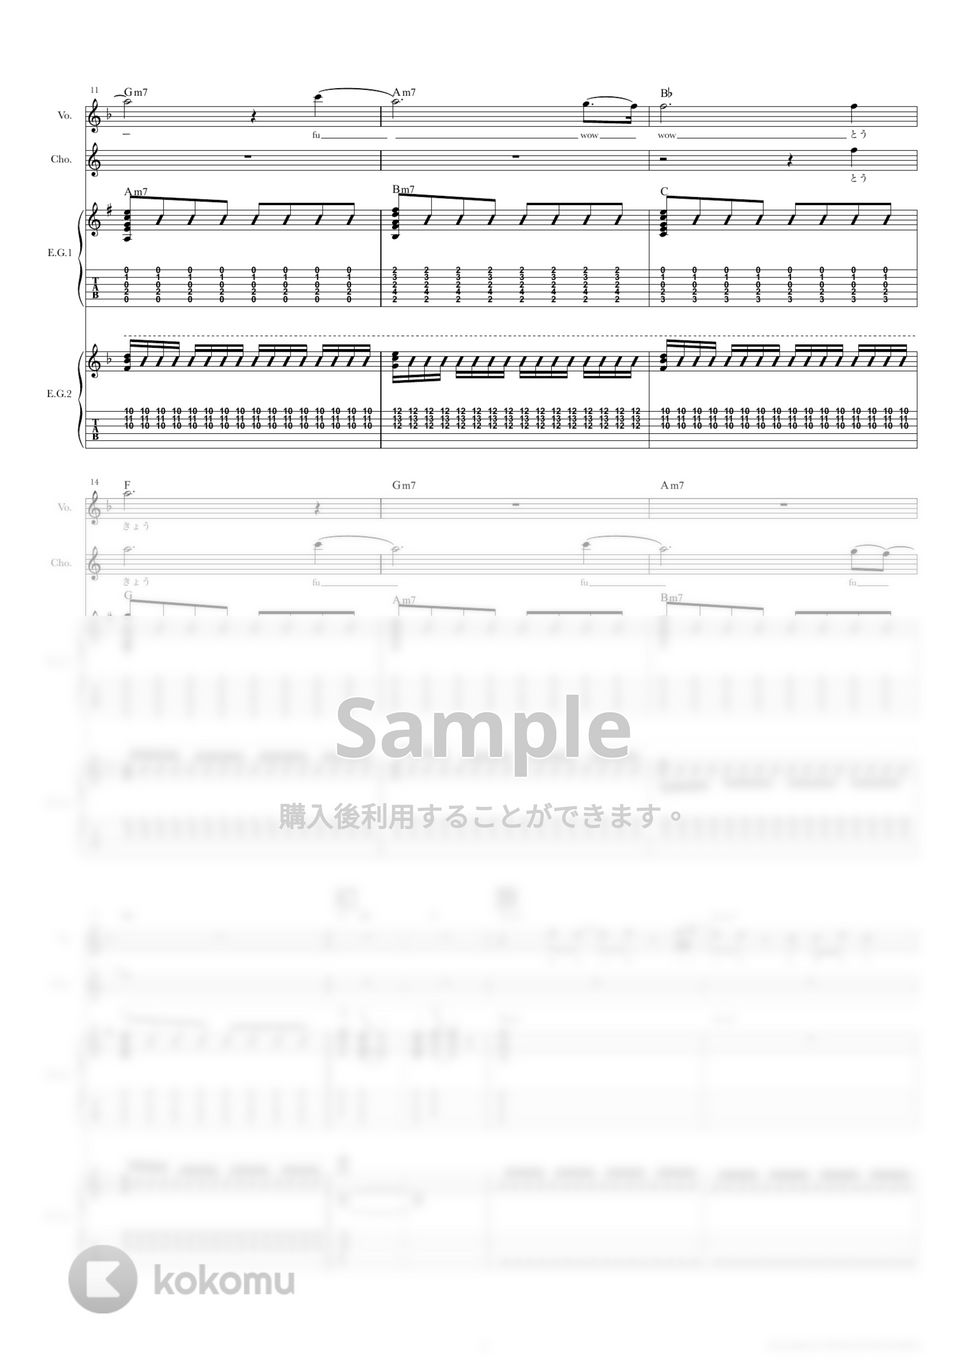 きのこ帝国 - 東京 (ギタースコア・歌詞・コード付き) by TRIAD GUITAR SCHOOL